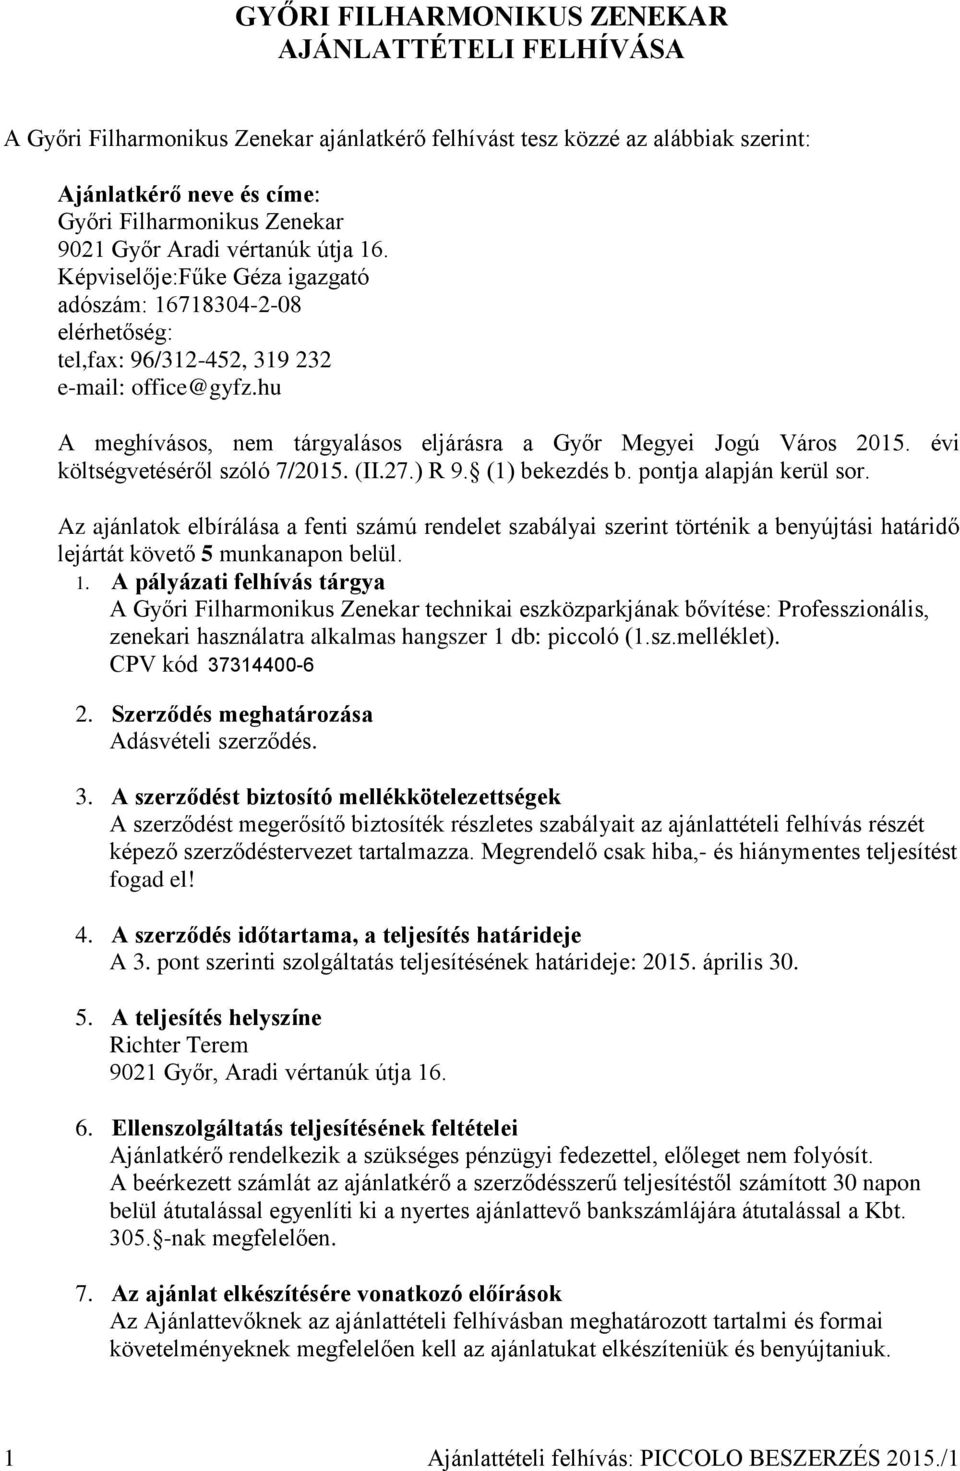 hu A meghívásos, nem tárgyalásos eljárásra a Győr Megyei Jogú Város 2015. évi költségvetéséről szóló 7/2015. (II.27.) R 9. (1) bekezdés b. pontja alapján kerül sor.